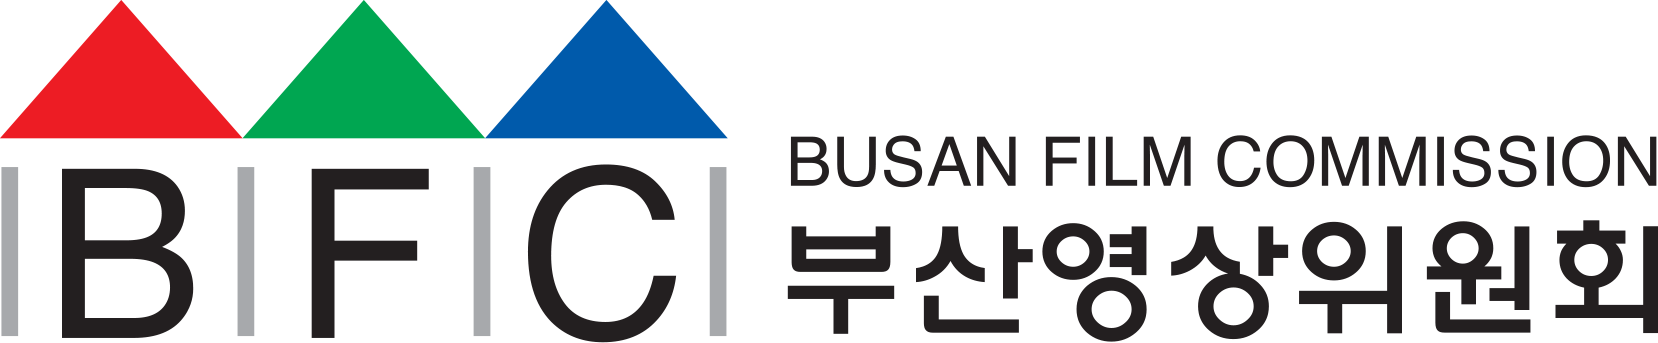 Busan Film Commission